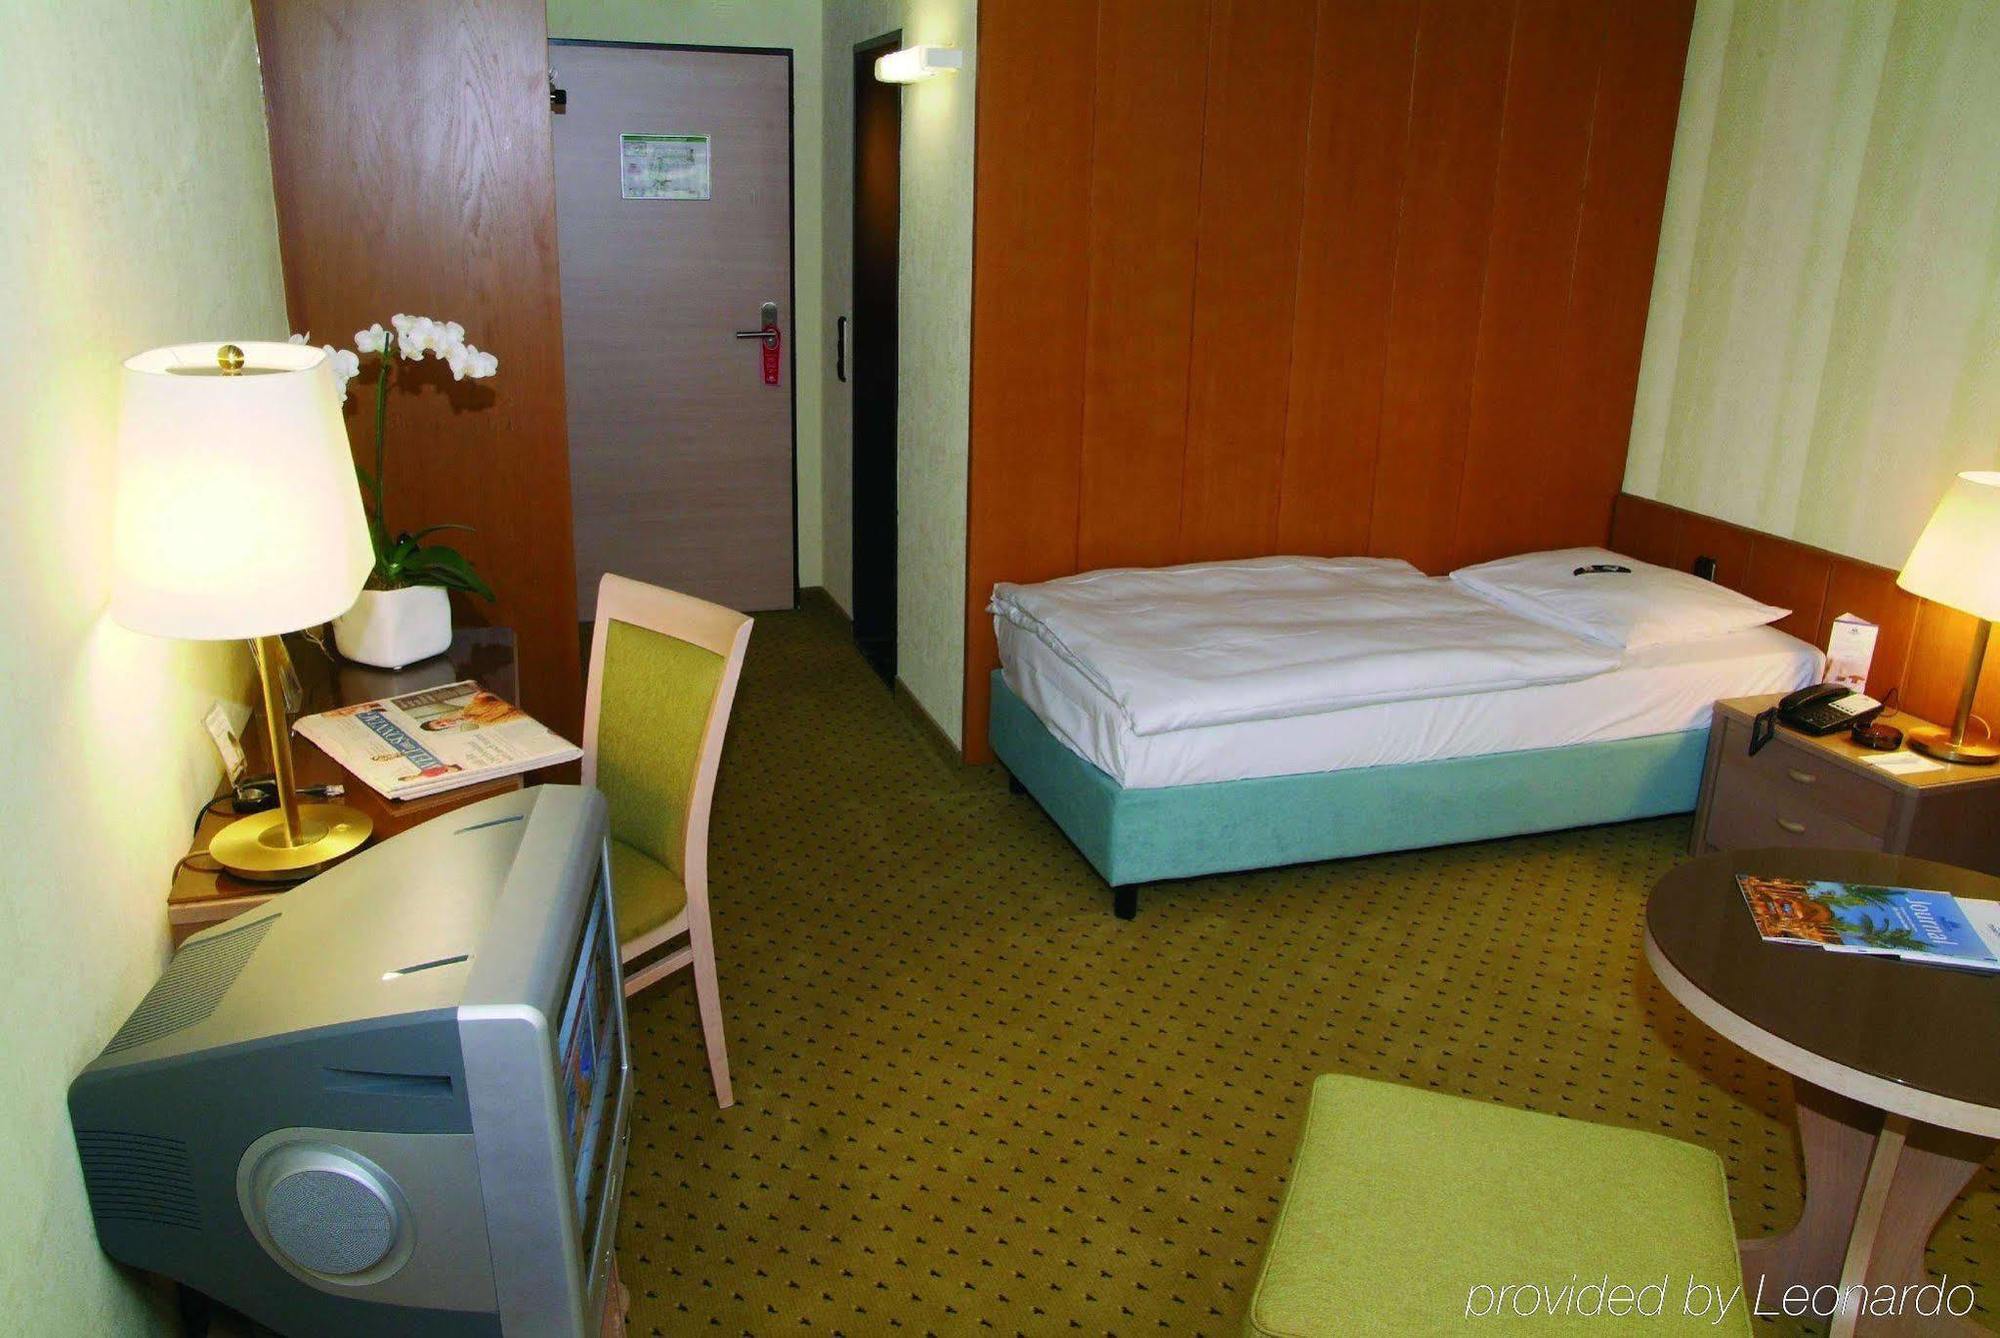 Hotel Schnitterhof Bad Sassendorf Extérieur photo